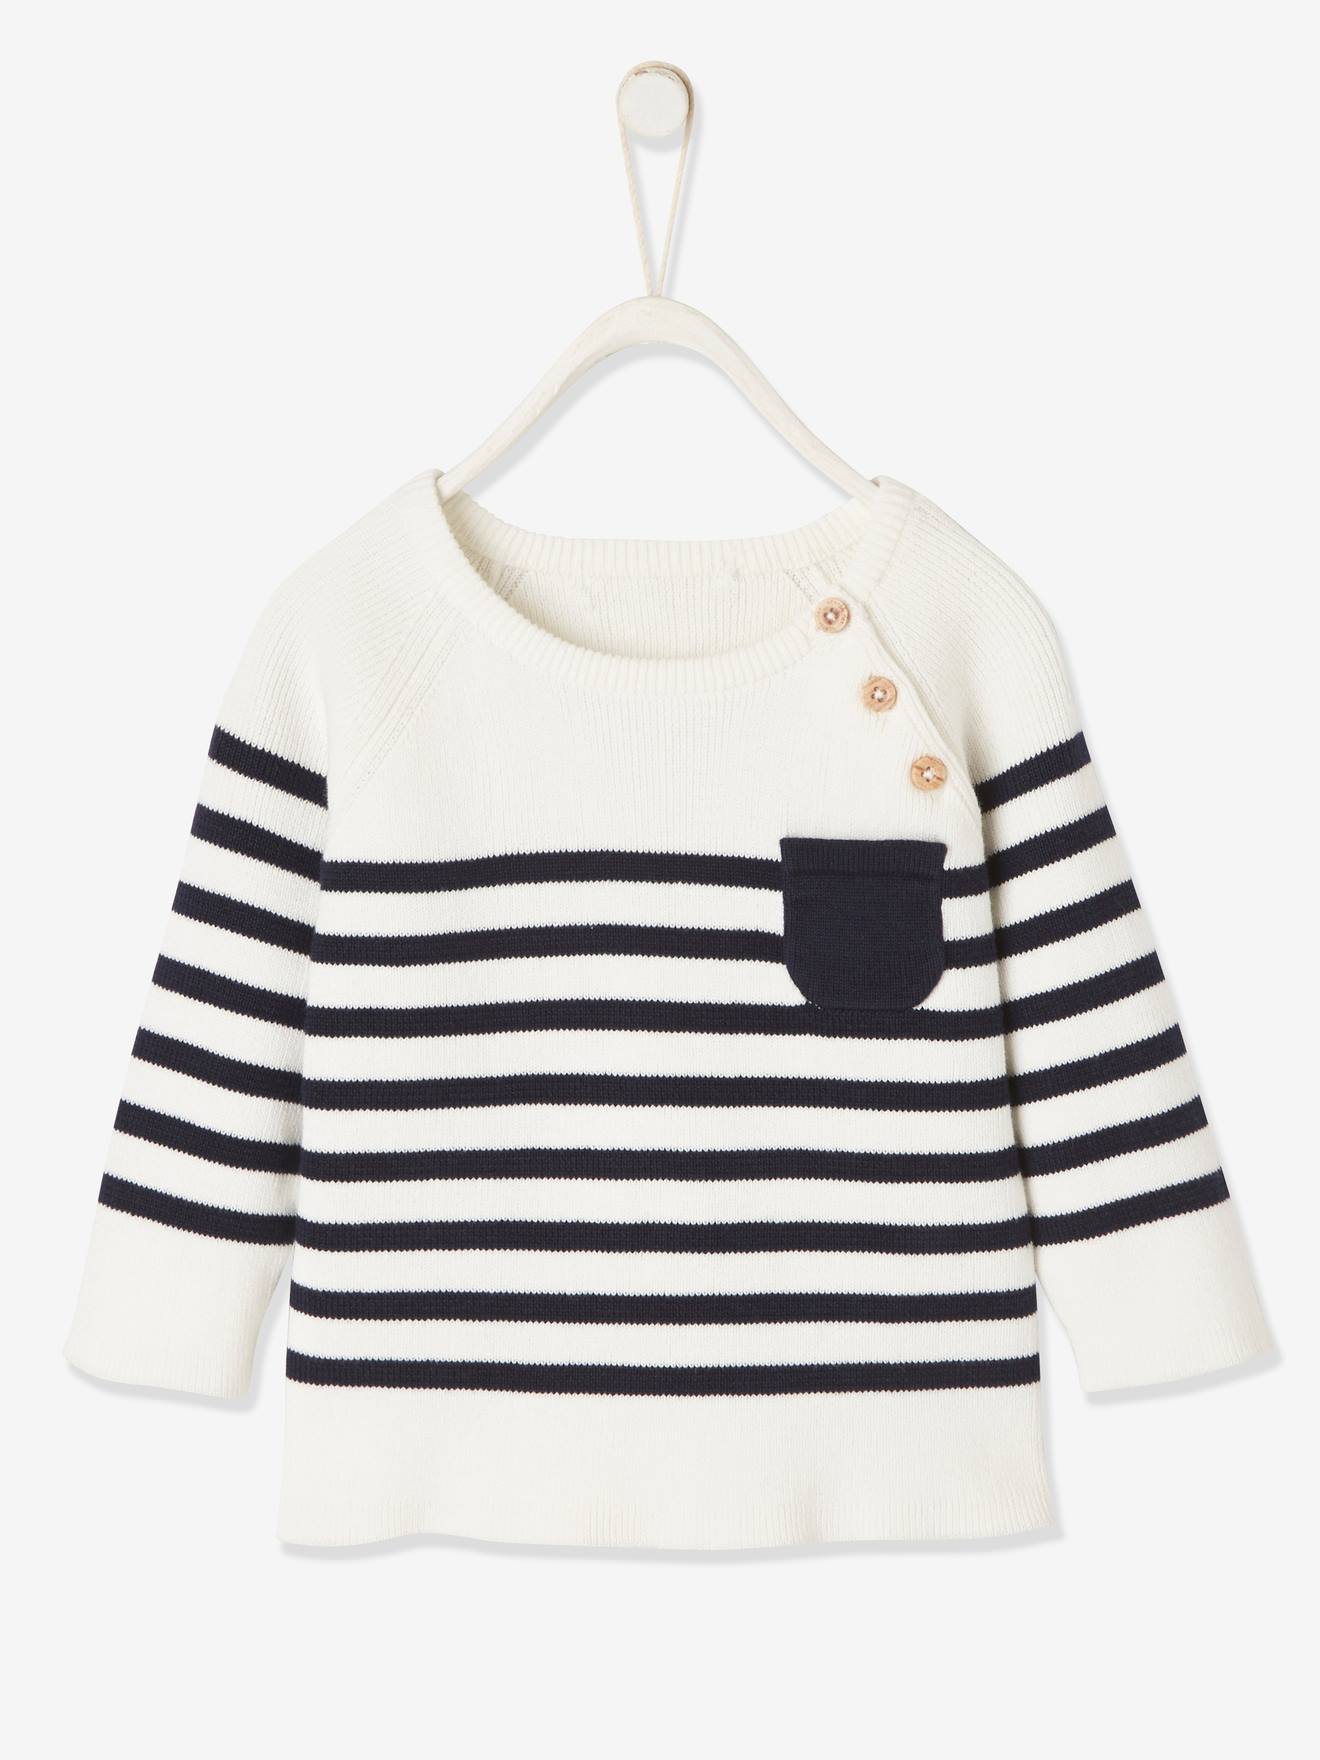 VERTBAUDET Jersey estilo marinero para bebé blanco claro a rayas